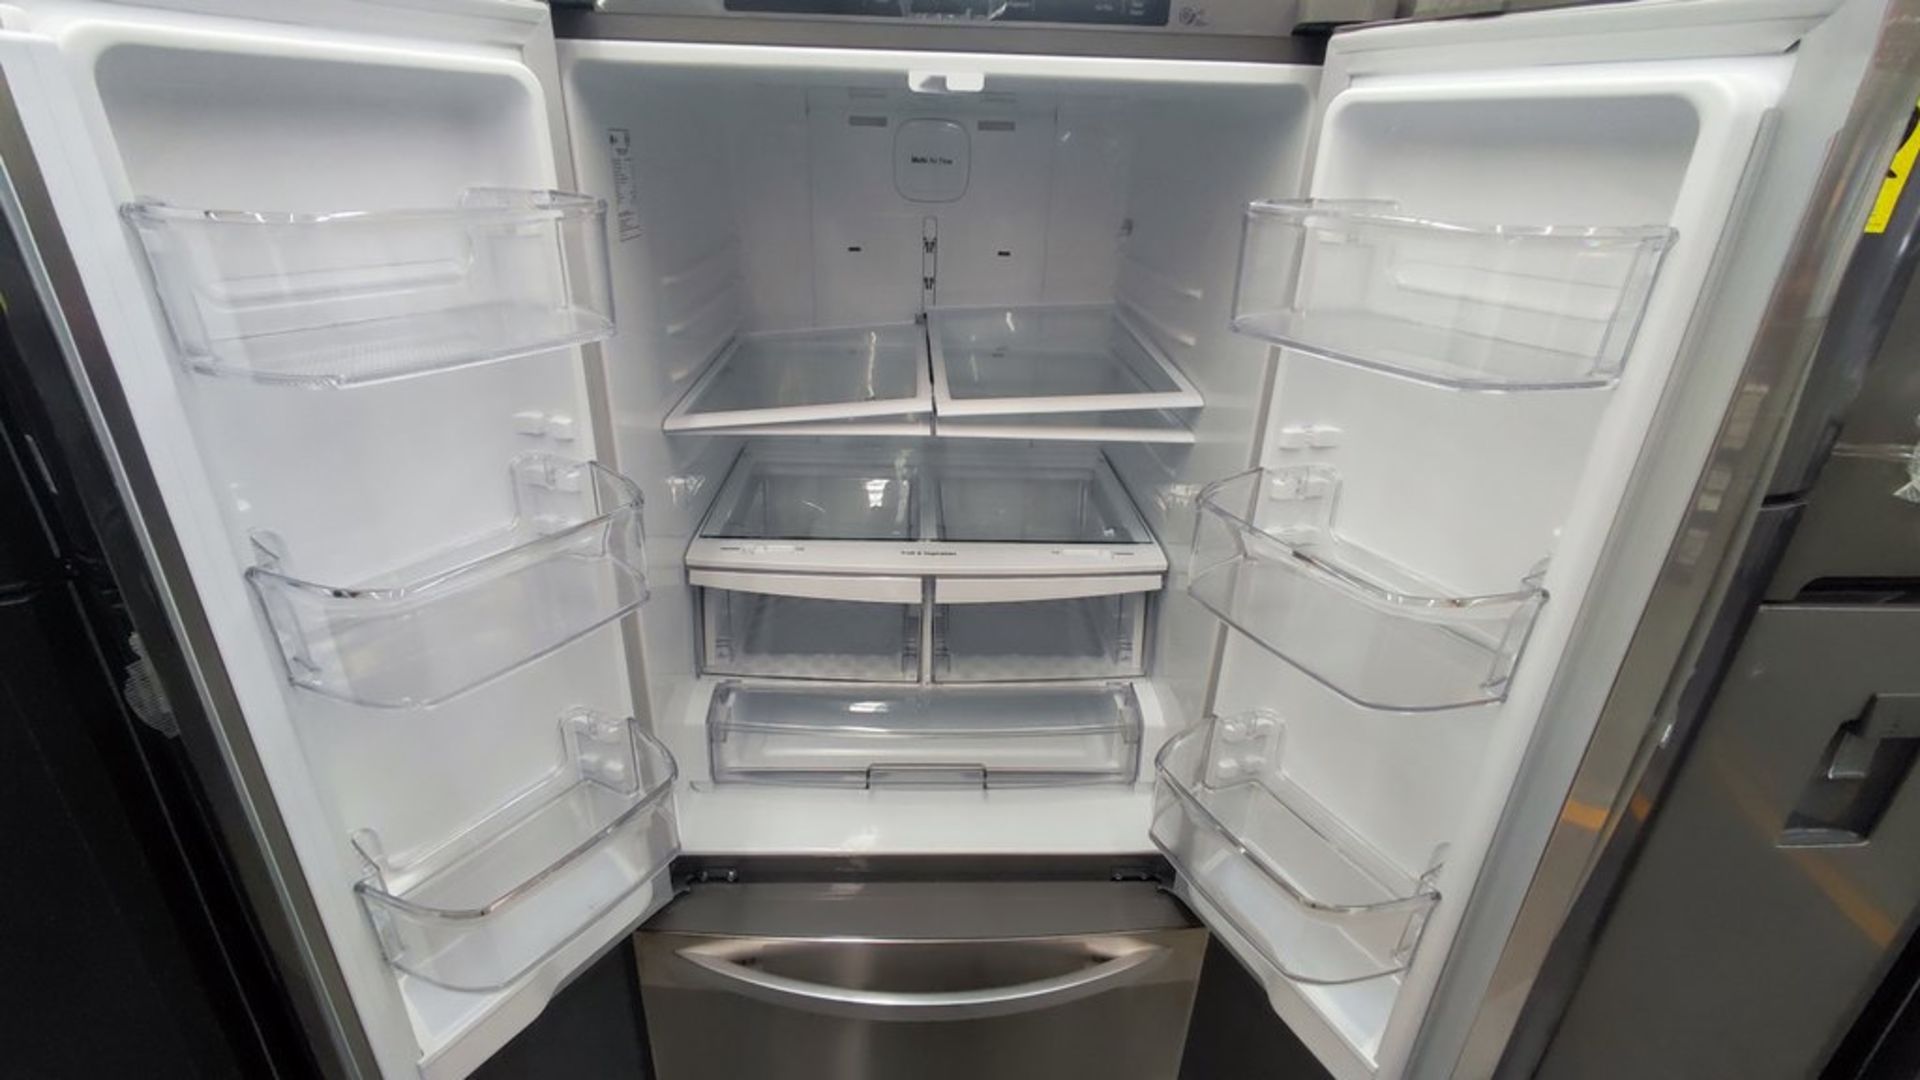 Lote de 2 refrigeradores contiene: 1 Refrigerador Marca Mabe, Modelo RMT400RY, No de serie 2201B410 - Image 8 of 15